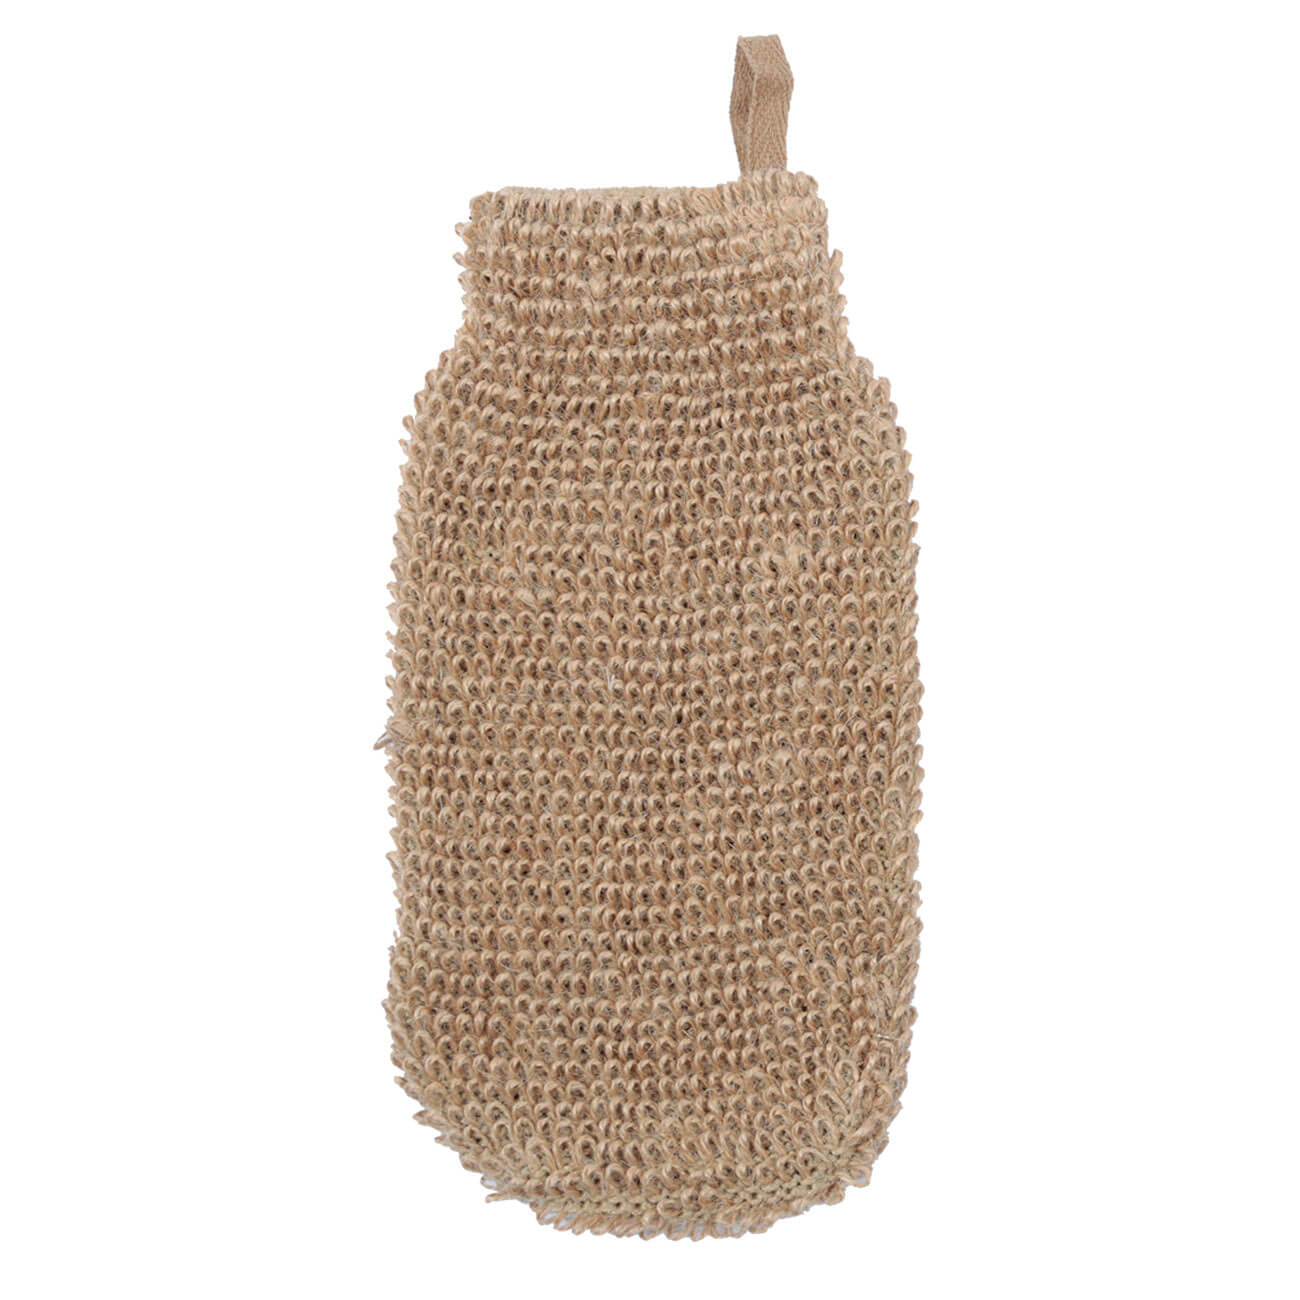 Мочалка-варежка для мытья тела, 10,5х21,5 см, конопляное волокно, бежевая, Eco life изображение № 1